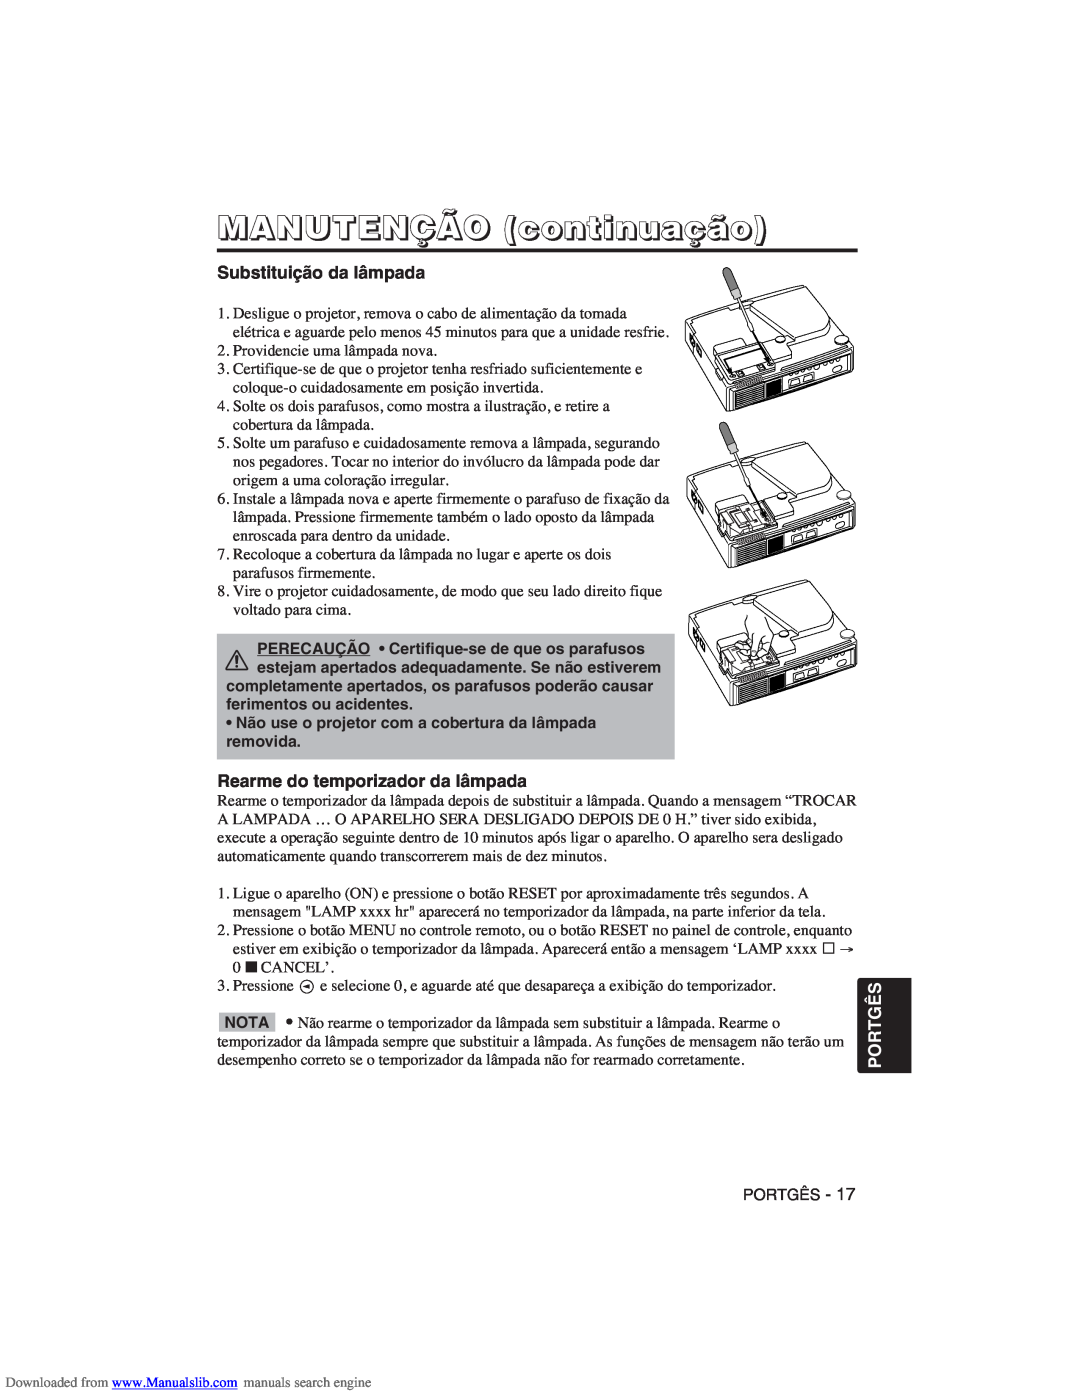 Hitachi CP-X275W user manual MANUTENÇÃO continuação, Substituição da lâmpada, Rearme do temporizador da lâmpada, Portgês 